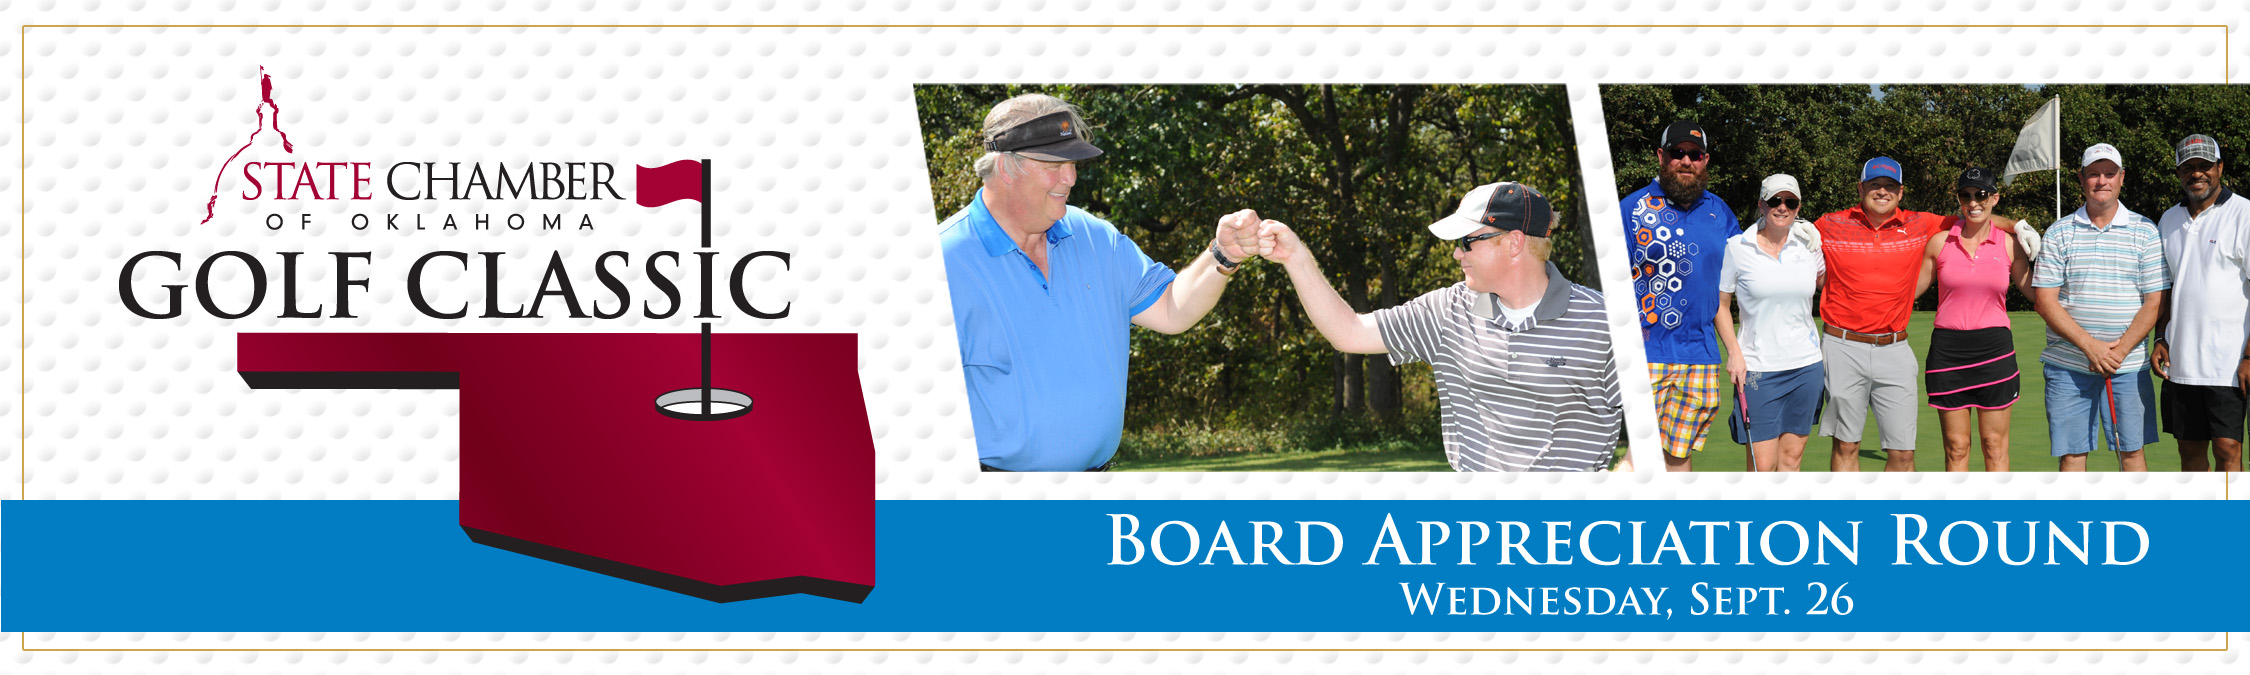 Board Appreciation Golf Classic